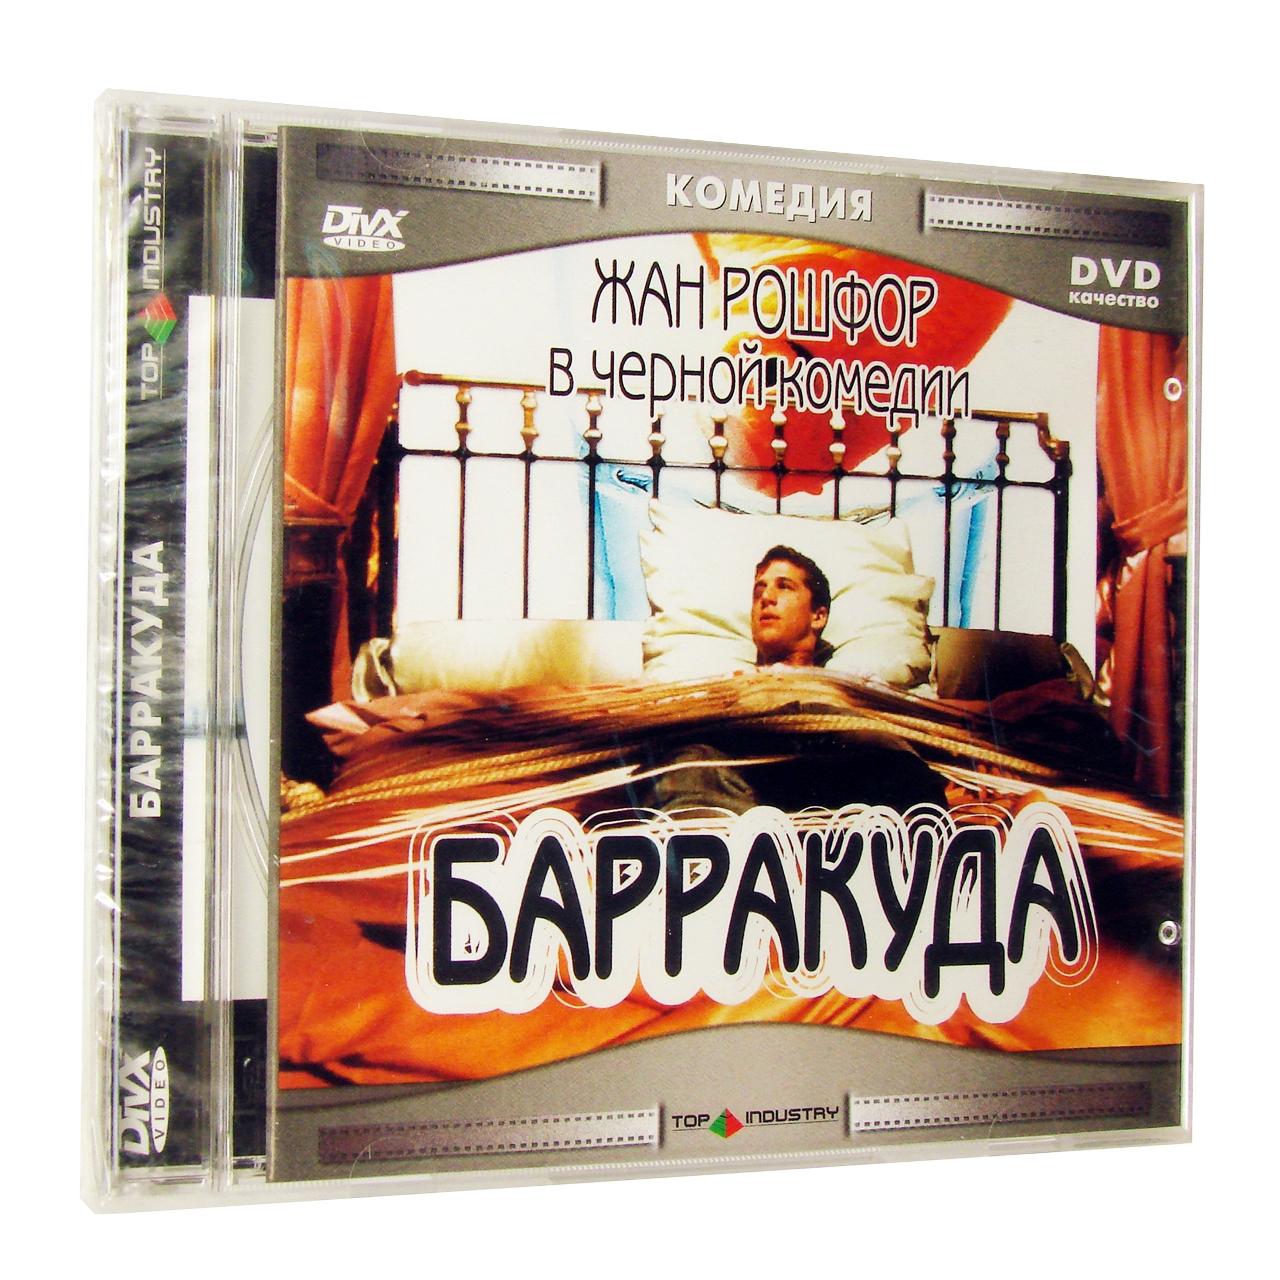 Компьютерный компакт-диск Барракуда (ПК), фирма "Top Industry", 1CD